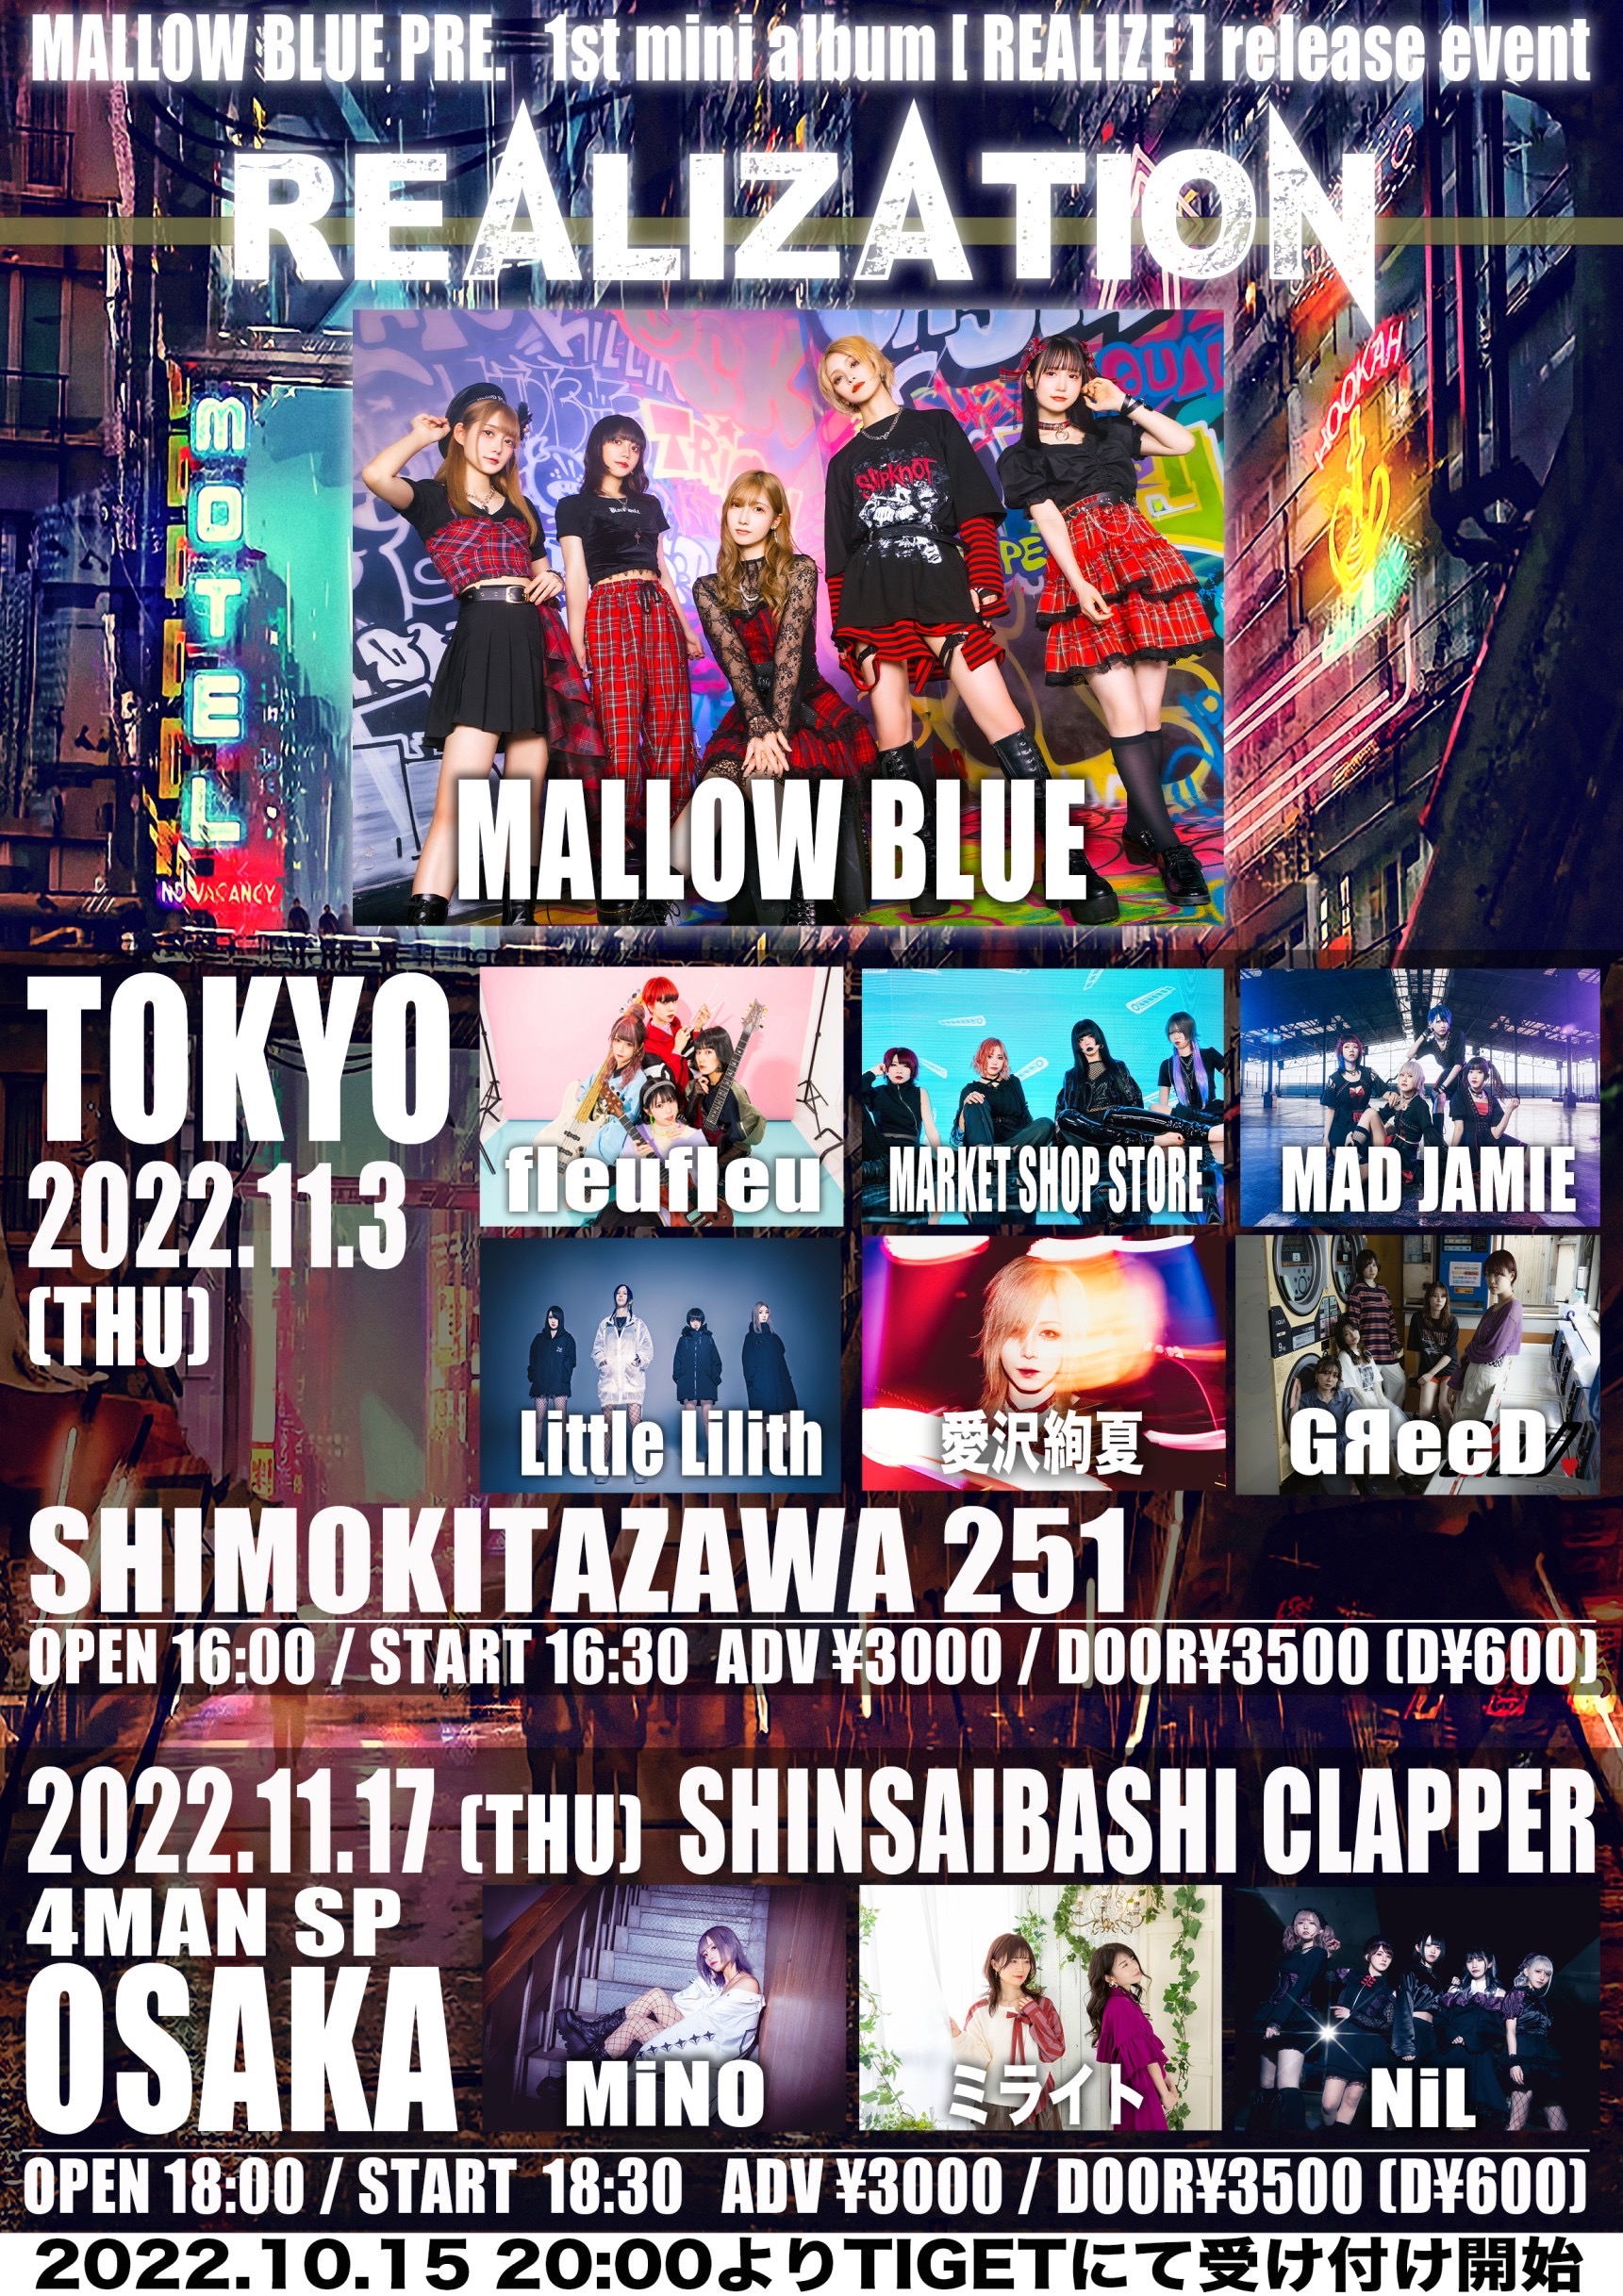 星井あおサポート出演公演『MALLOW BLUE 1st mini album『REALIZE』release event 【REALIZATION -TOKYO-】』